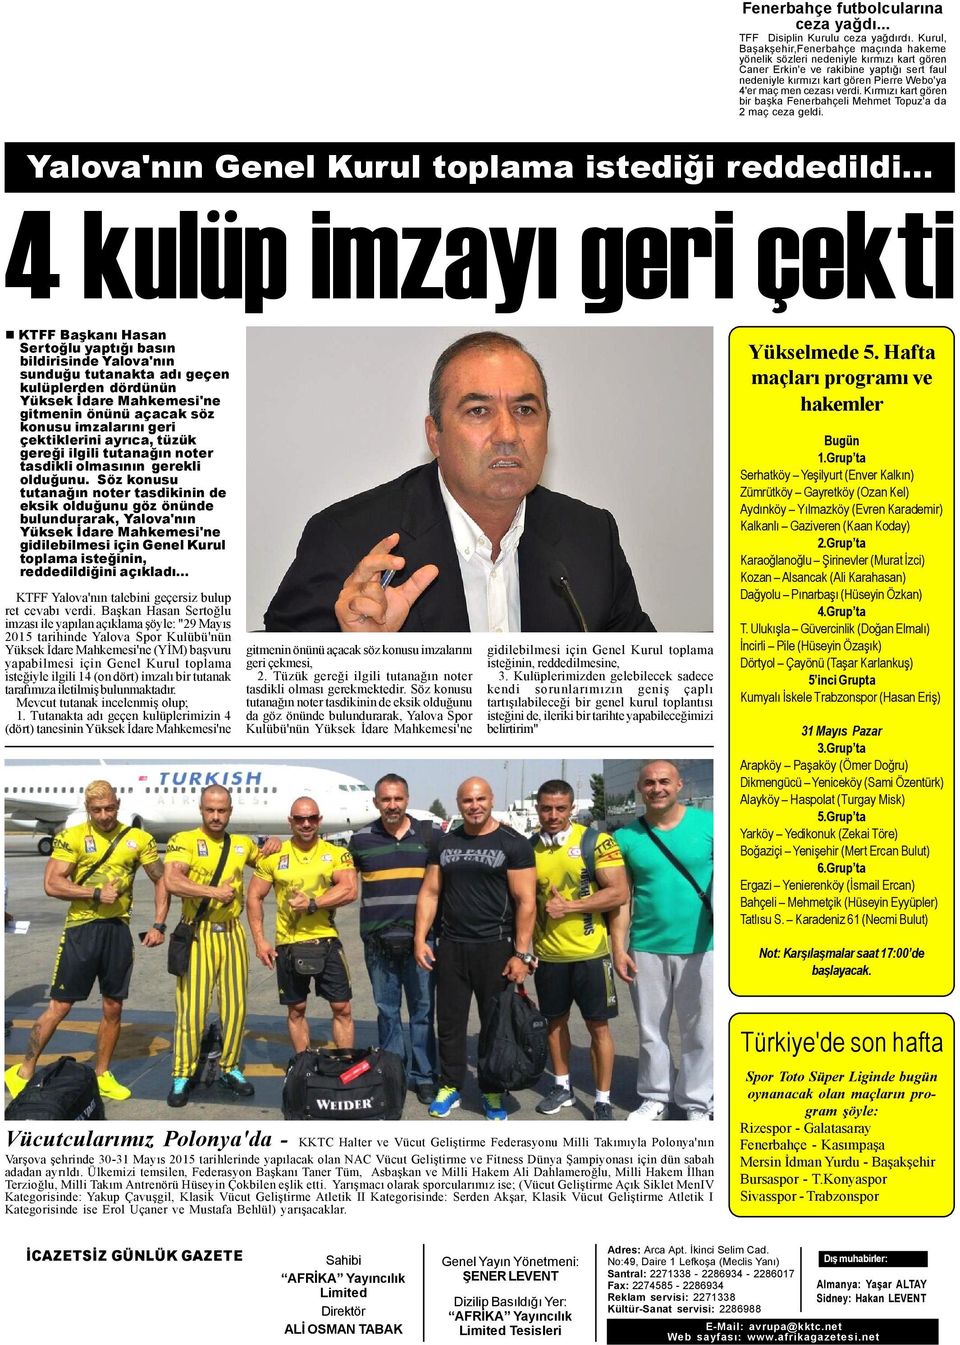 verdi. Kýrmýzý kart gören bir baþka Fenerbahçeli Mehmet Topuz'a da 2 maç ceza geldi.